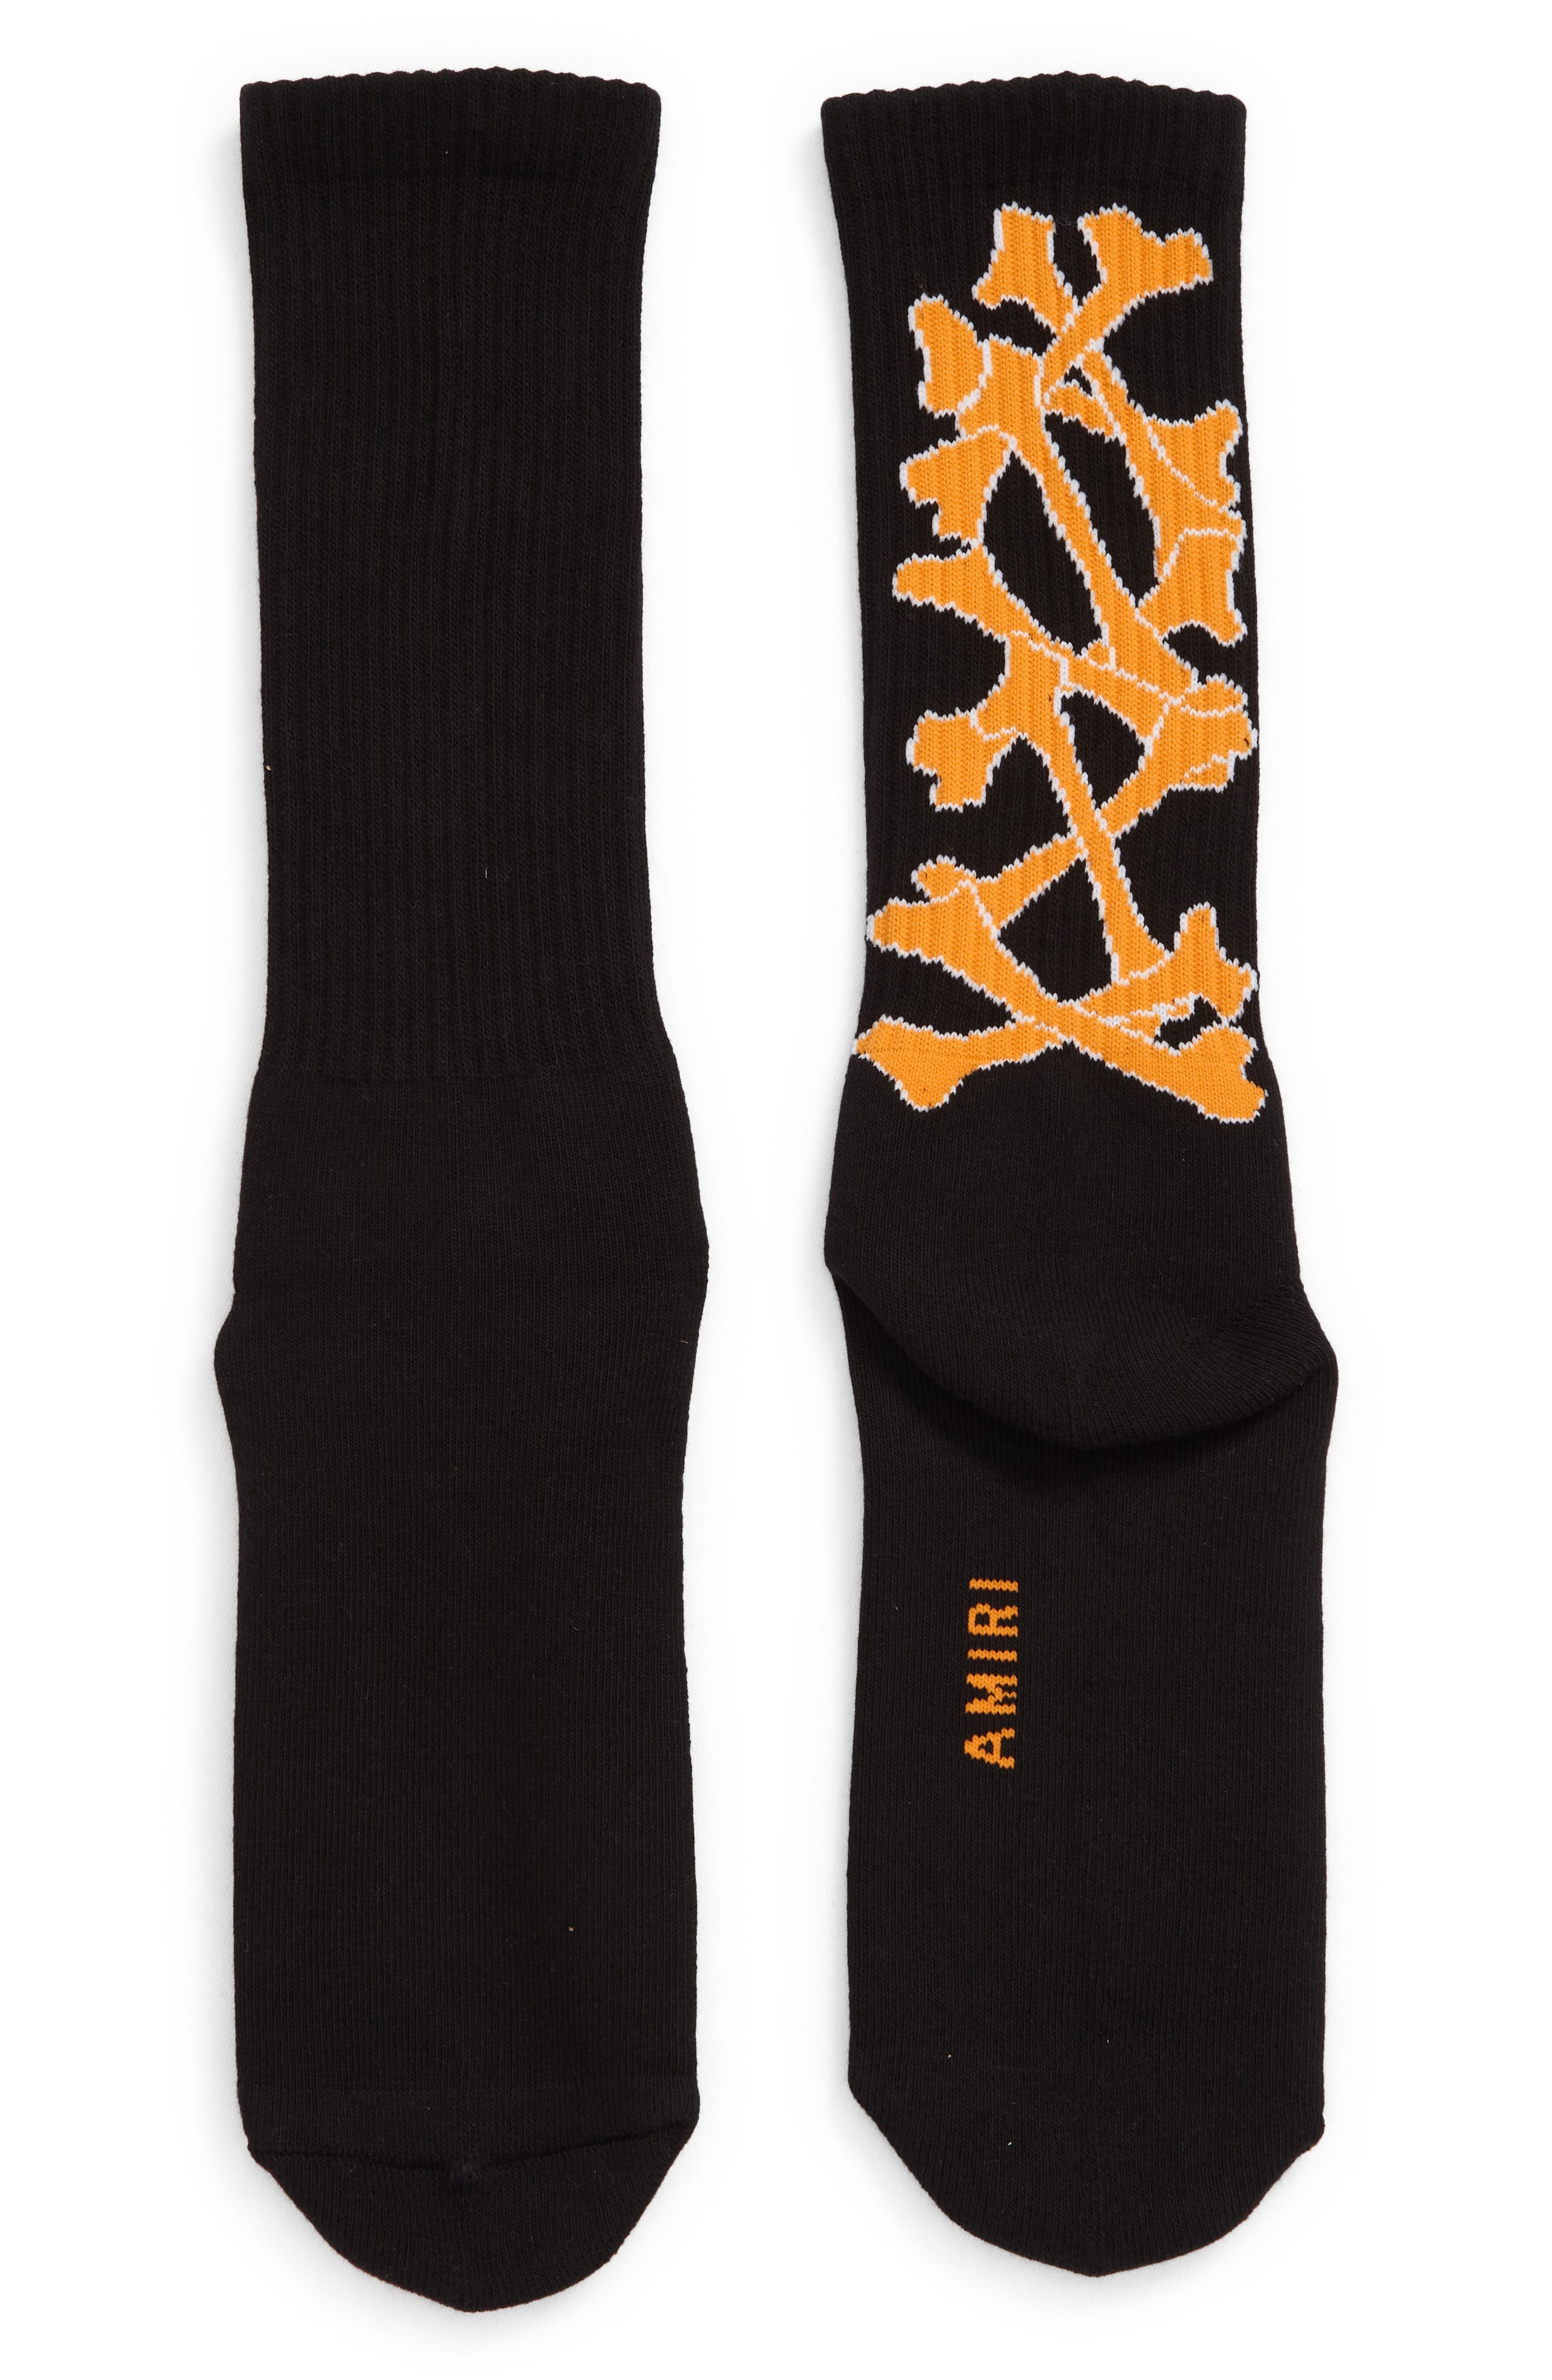 AMIRI Stacked Bones Crew Socks in Black/Orange at Nordstrom, Size 8-9 Us